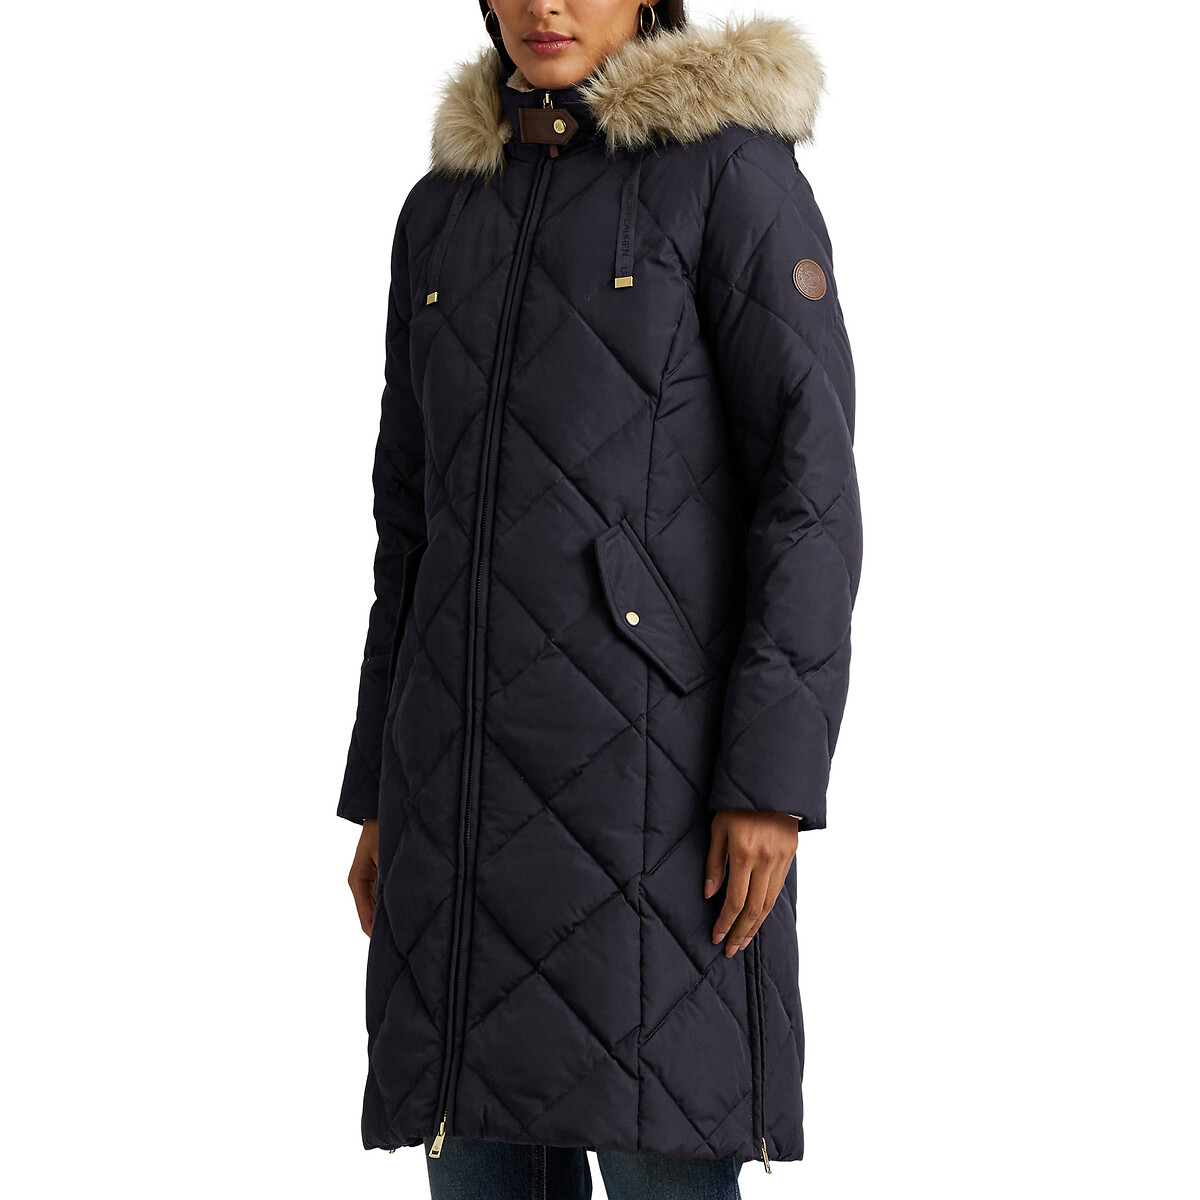 Куртка стеганая средней длины с капюшоном с оторочкой мехом XS синий